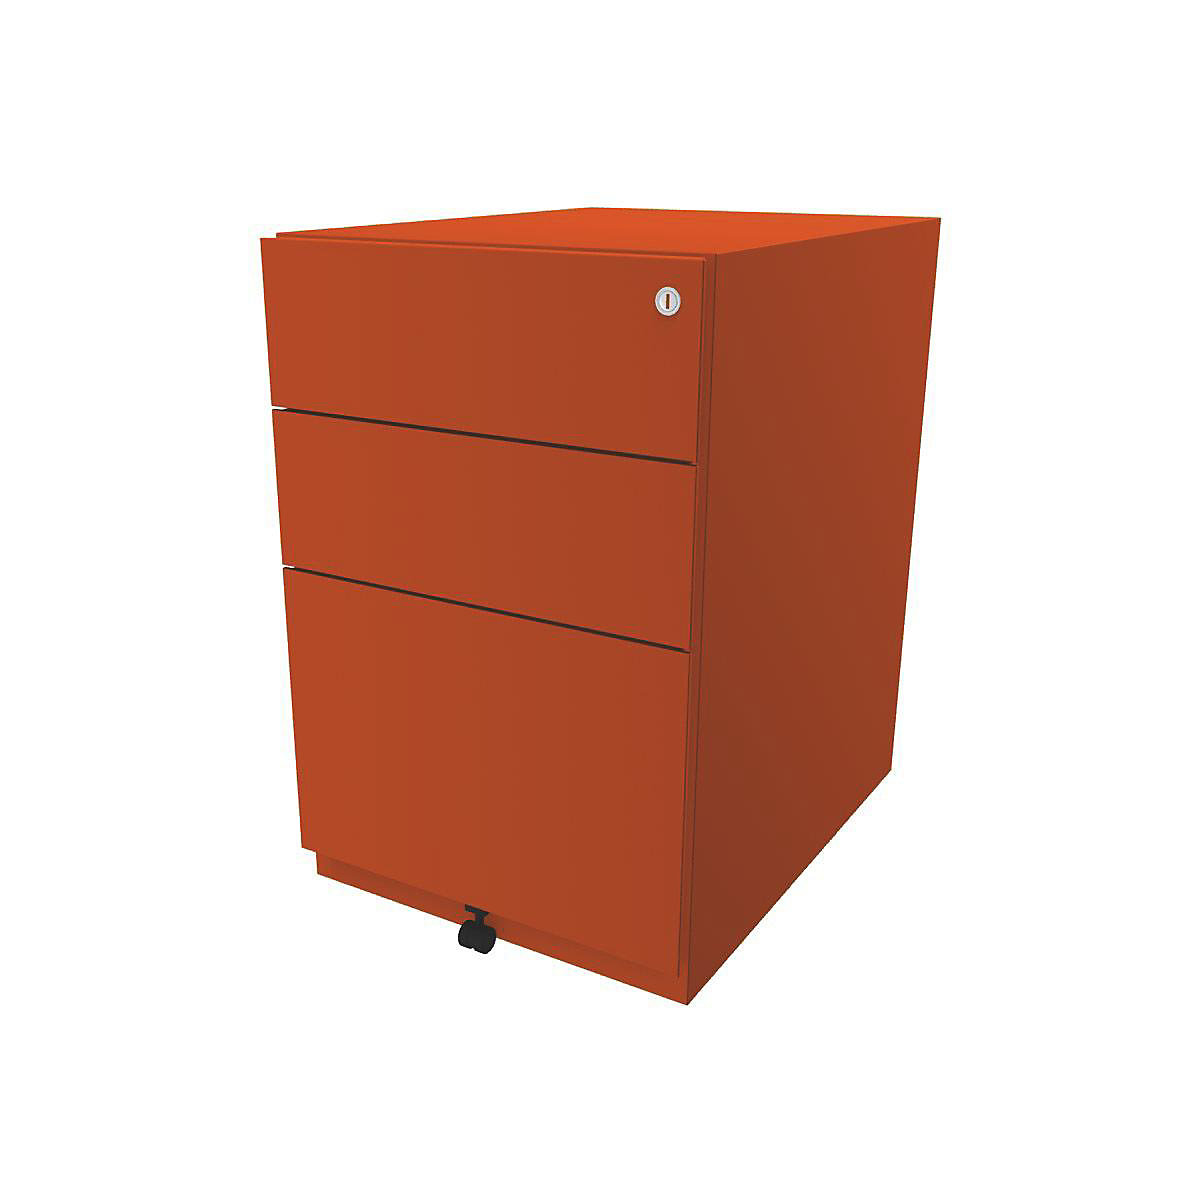 BISLEY Rollcontainer Note™, mit 2 Universalschubladen, 1 Hängeregistratur, HxBxT 645 x 420 x 565 mm, orange